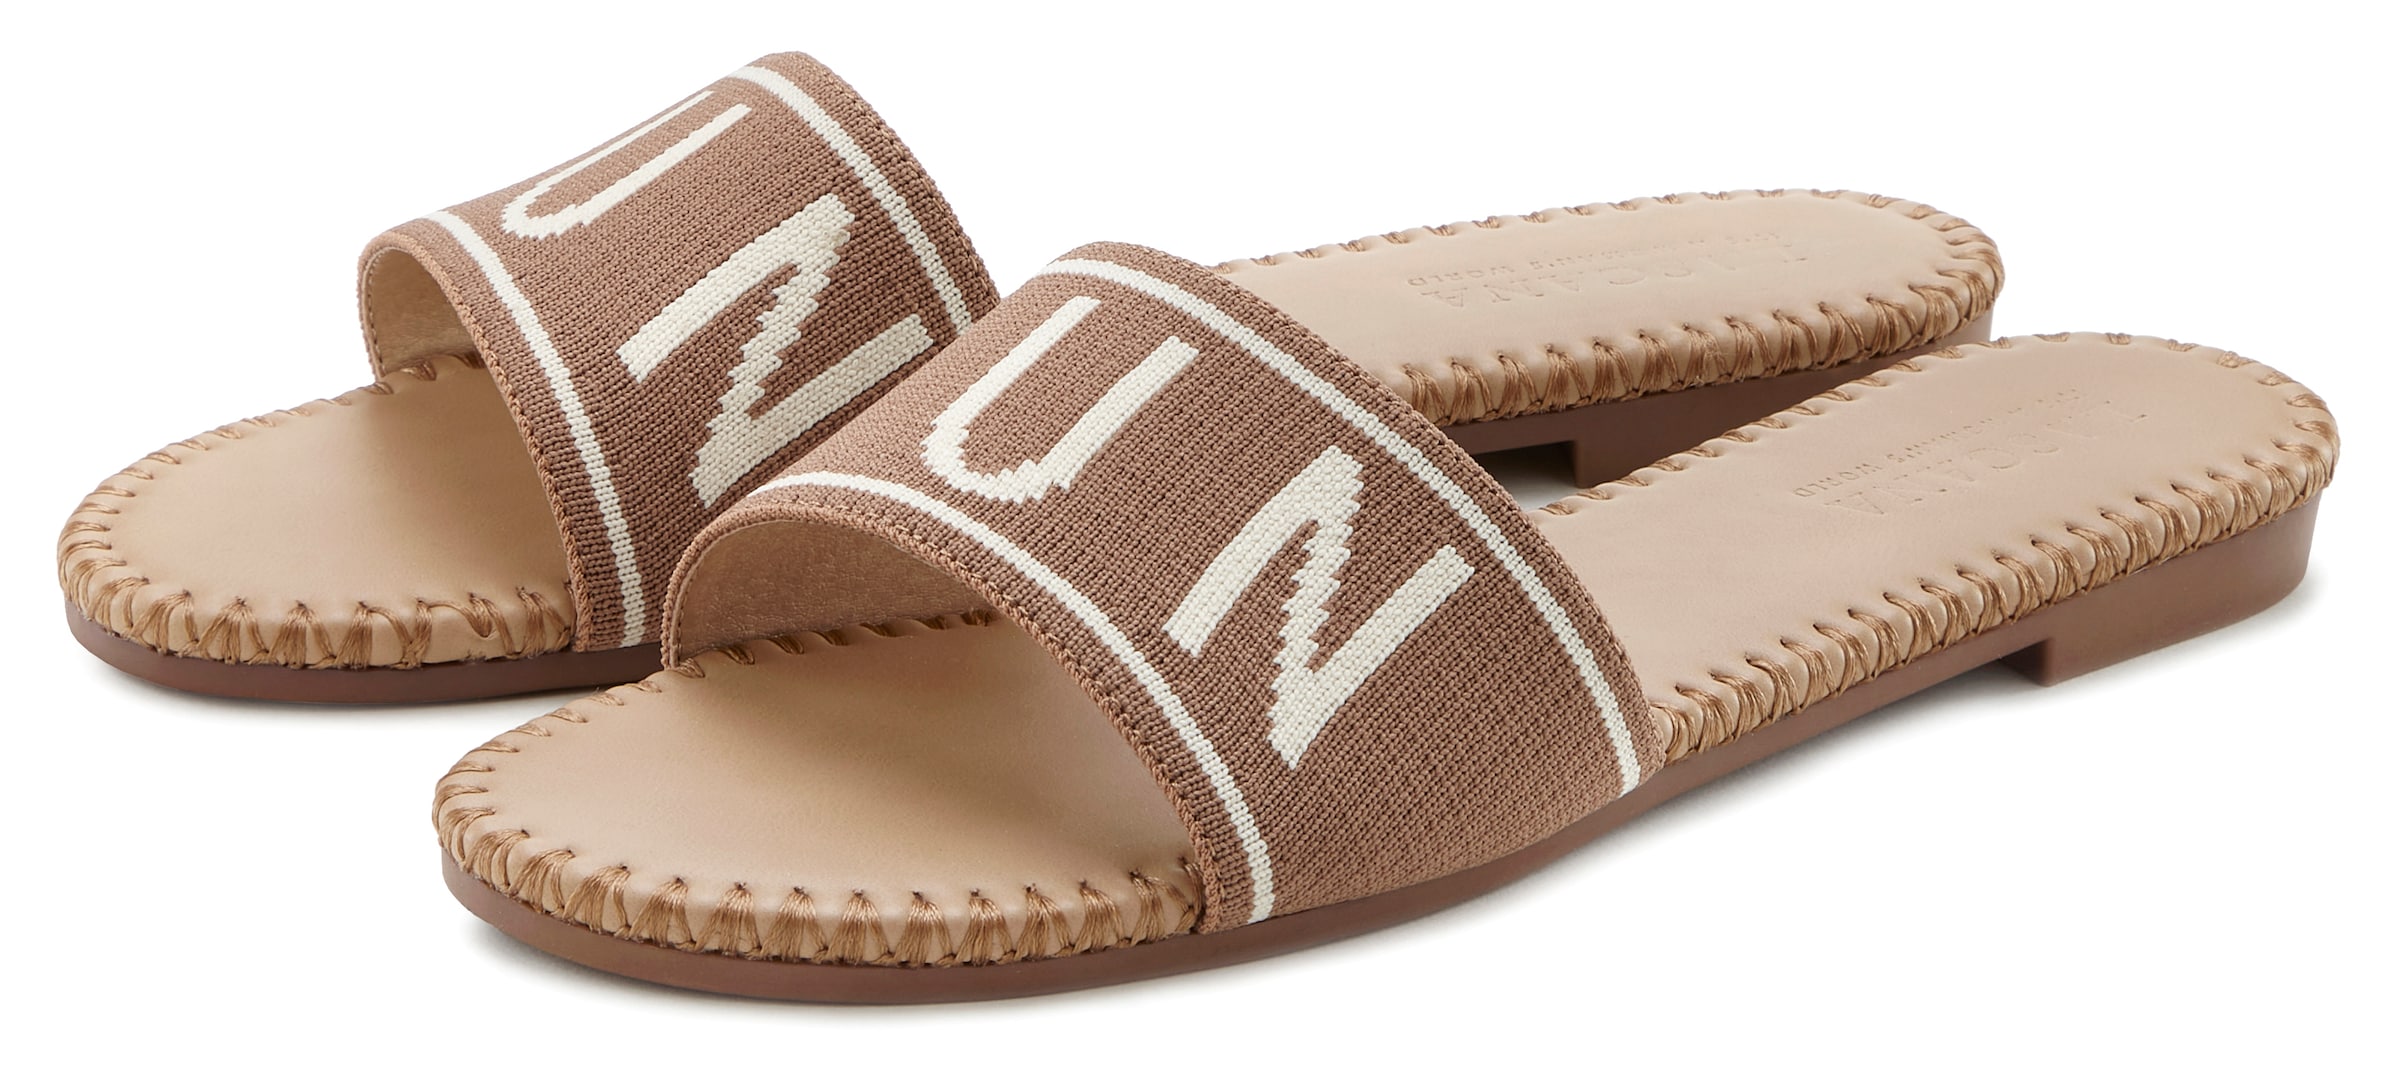 Pantolette, Mule, Sandale, offener Schuh aus Textil mit modischem Schriftzug VEGAN